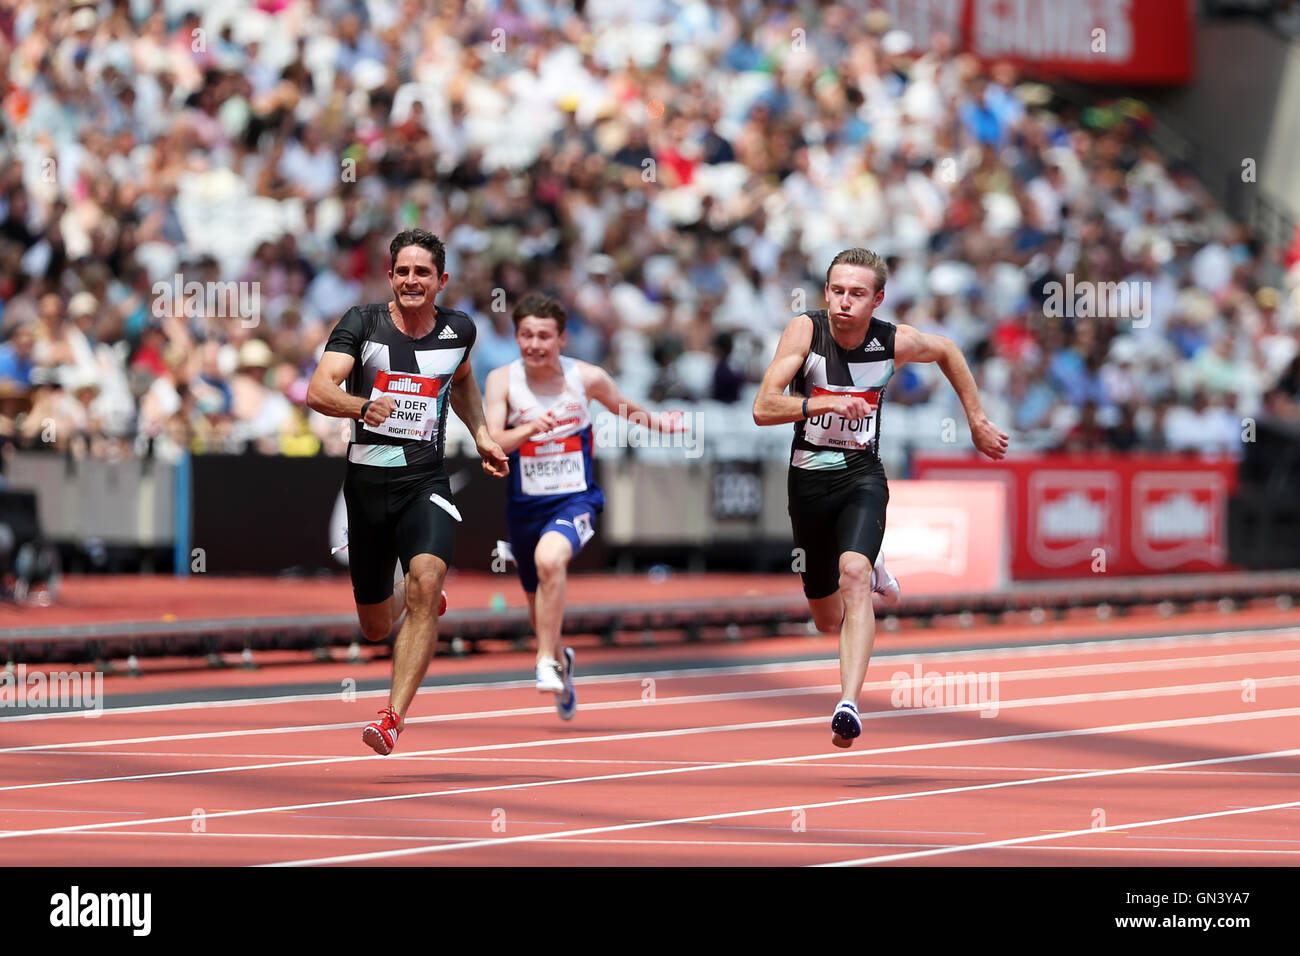 Charl du TOIT & Fanie van der MERWE in Südafrika läuft in den Männern T37 100m bei der IPC Jubiläumsspiele, Queen Elizabeth Olympic Park, Stratford, London, UK. Stockfoto